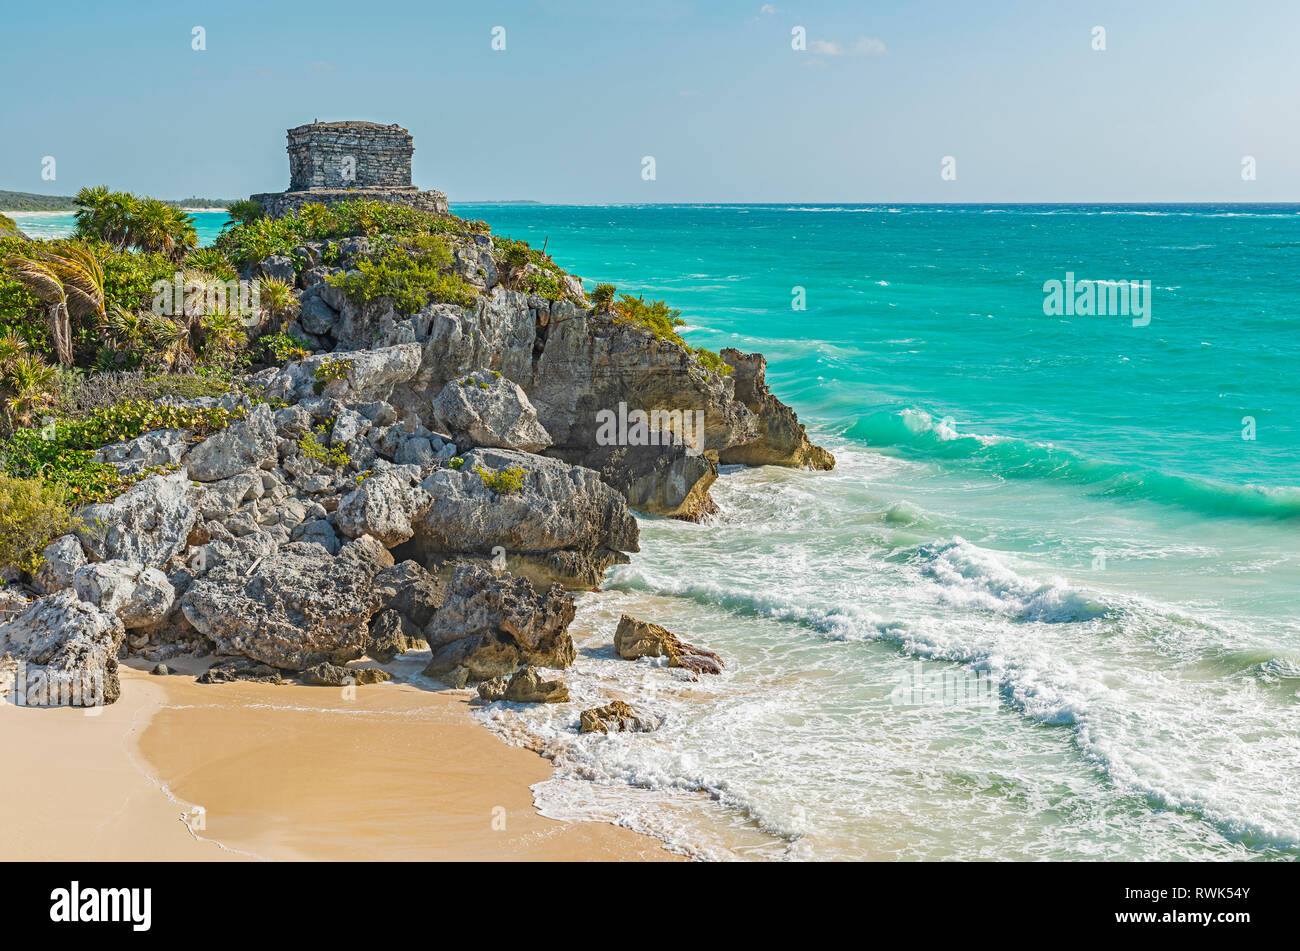 Die Ruinen von Tulum der Maya Zivilisation an der Karibik in der Nähe der touristischen Zentren von Playa del Carmen und Cancun, Yucatan, Mexiko. Stockfoto